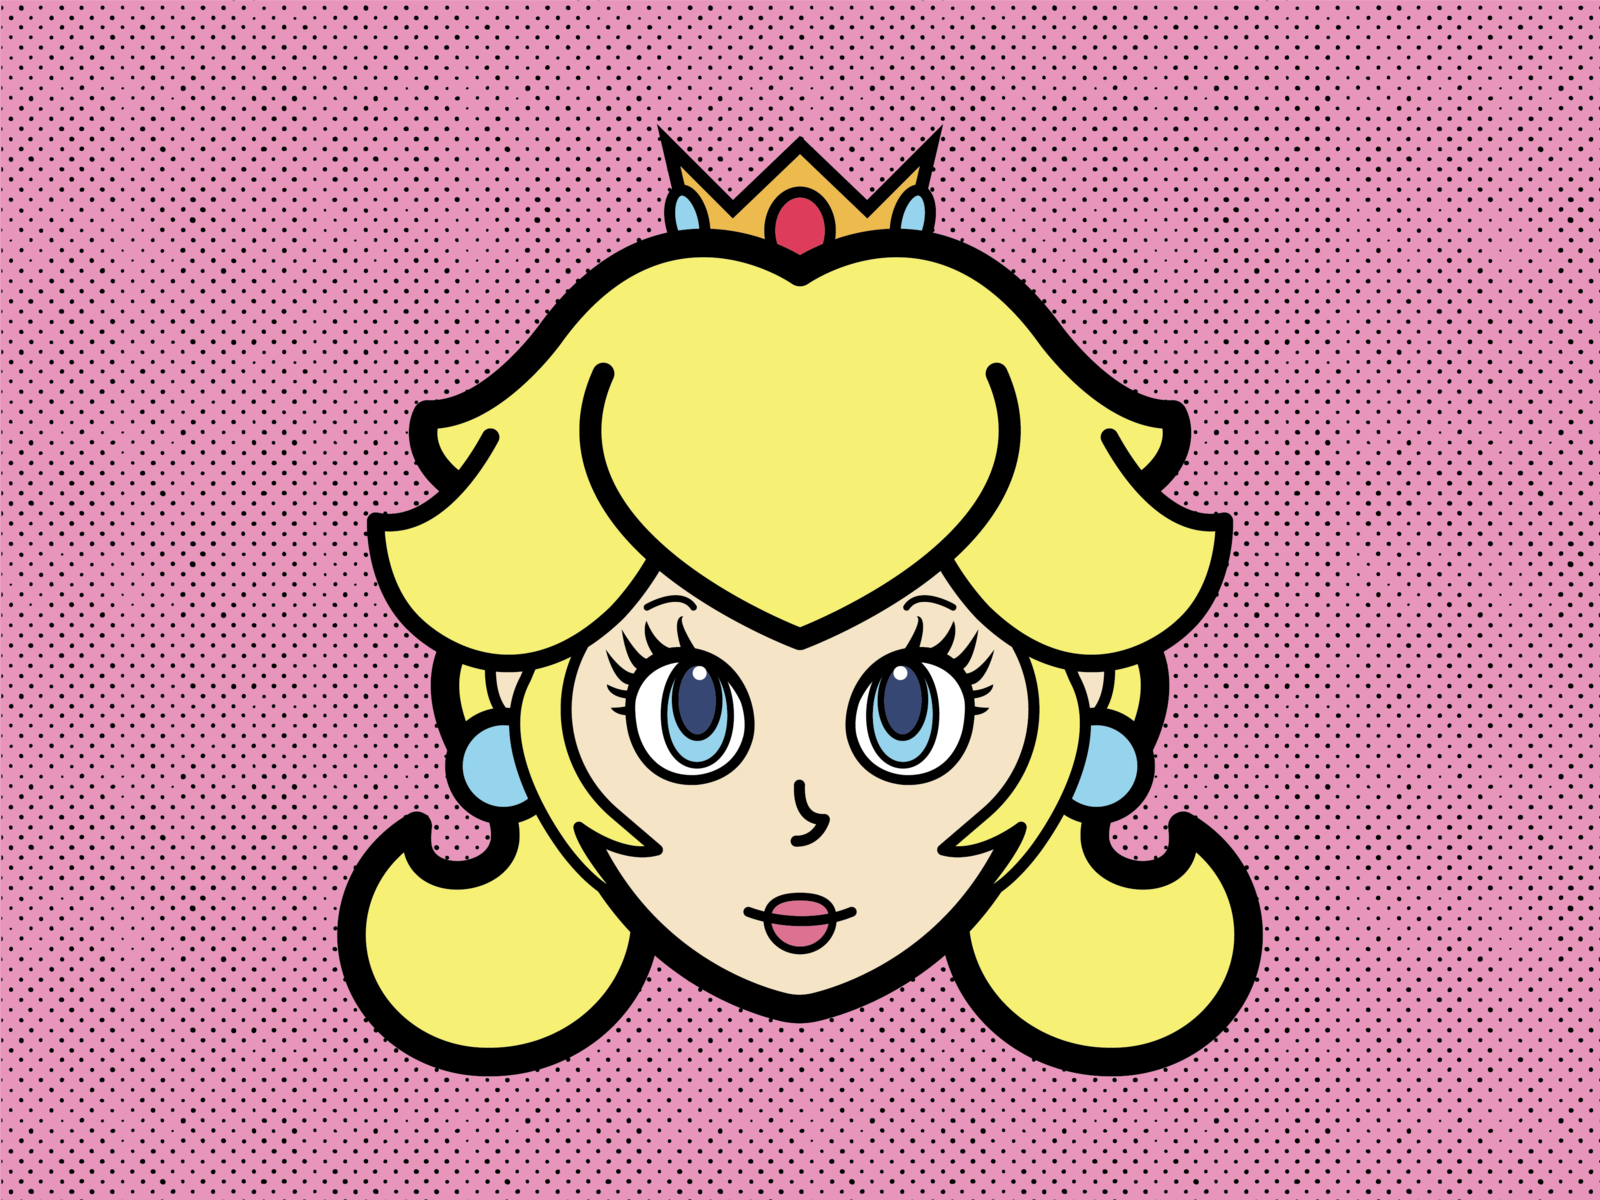 Princess Peach designed by Nick Farr. 